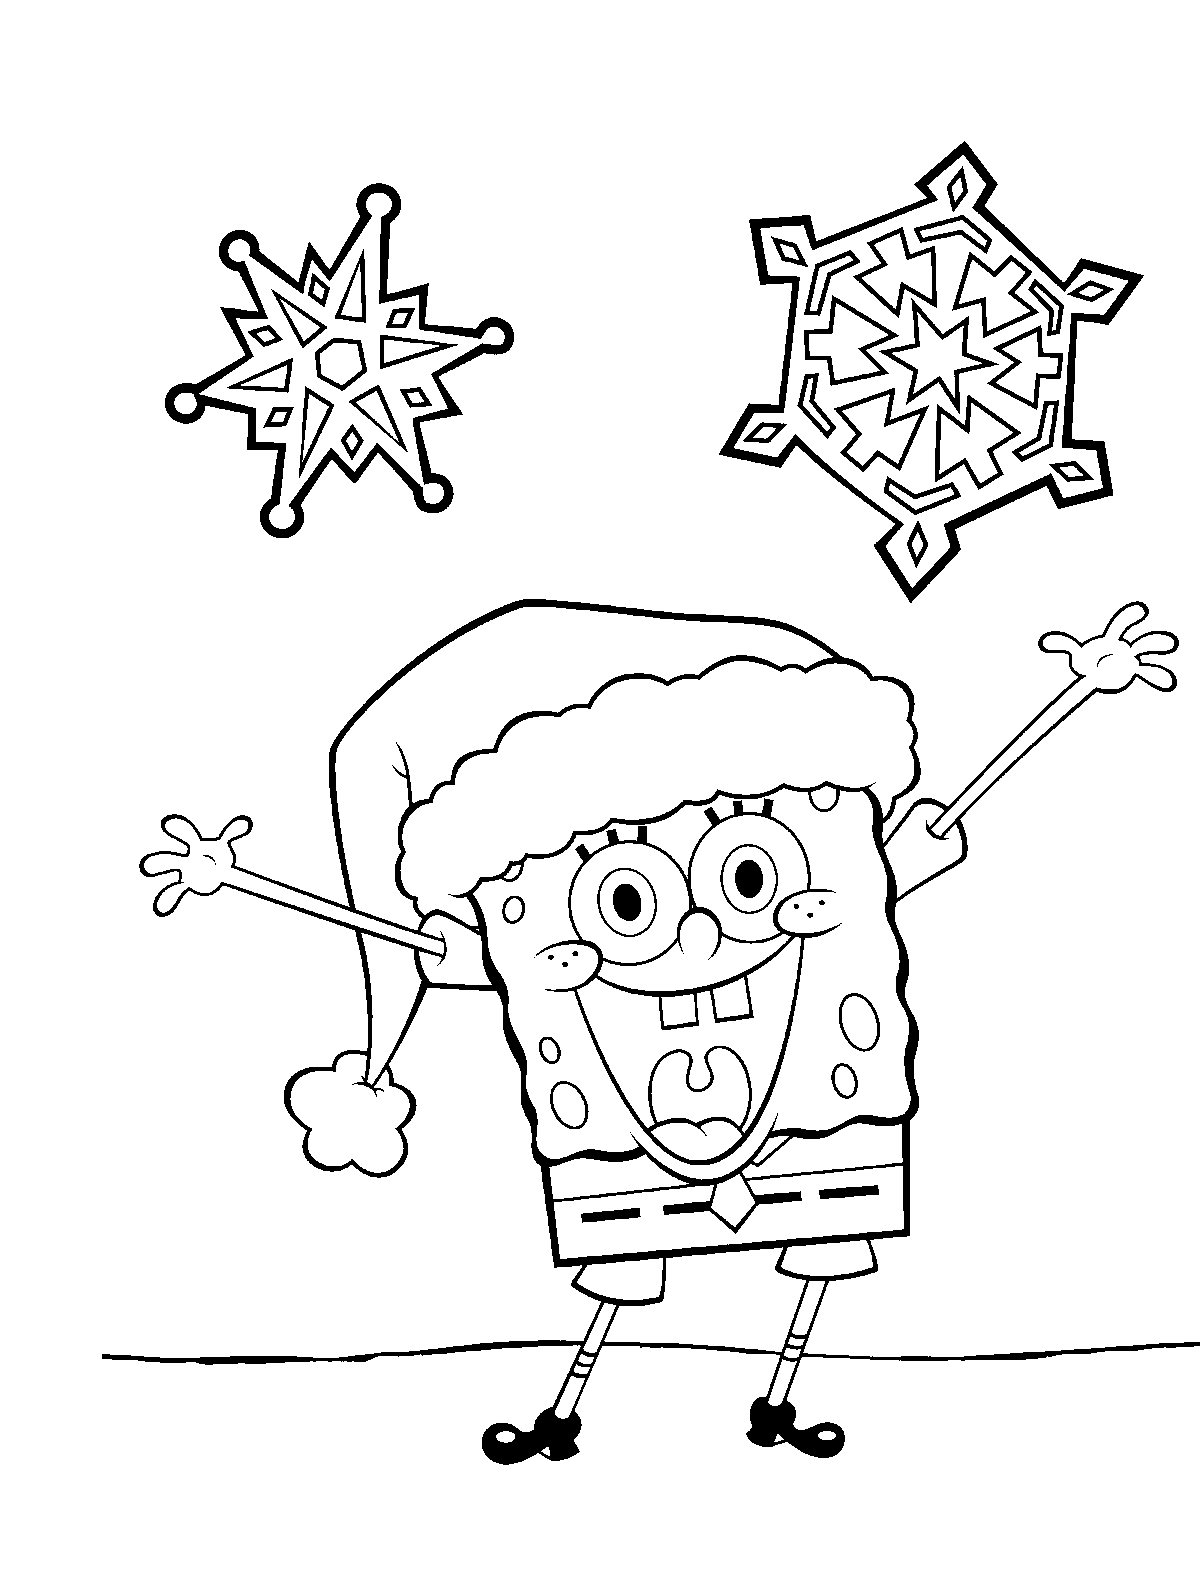 It's Christmas for Bob!